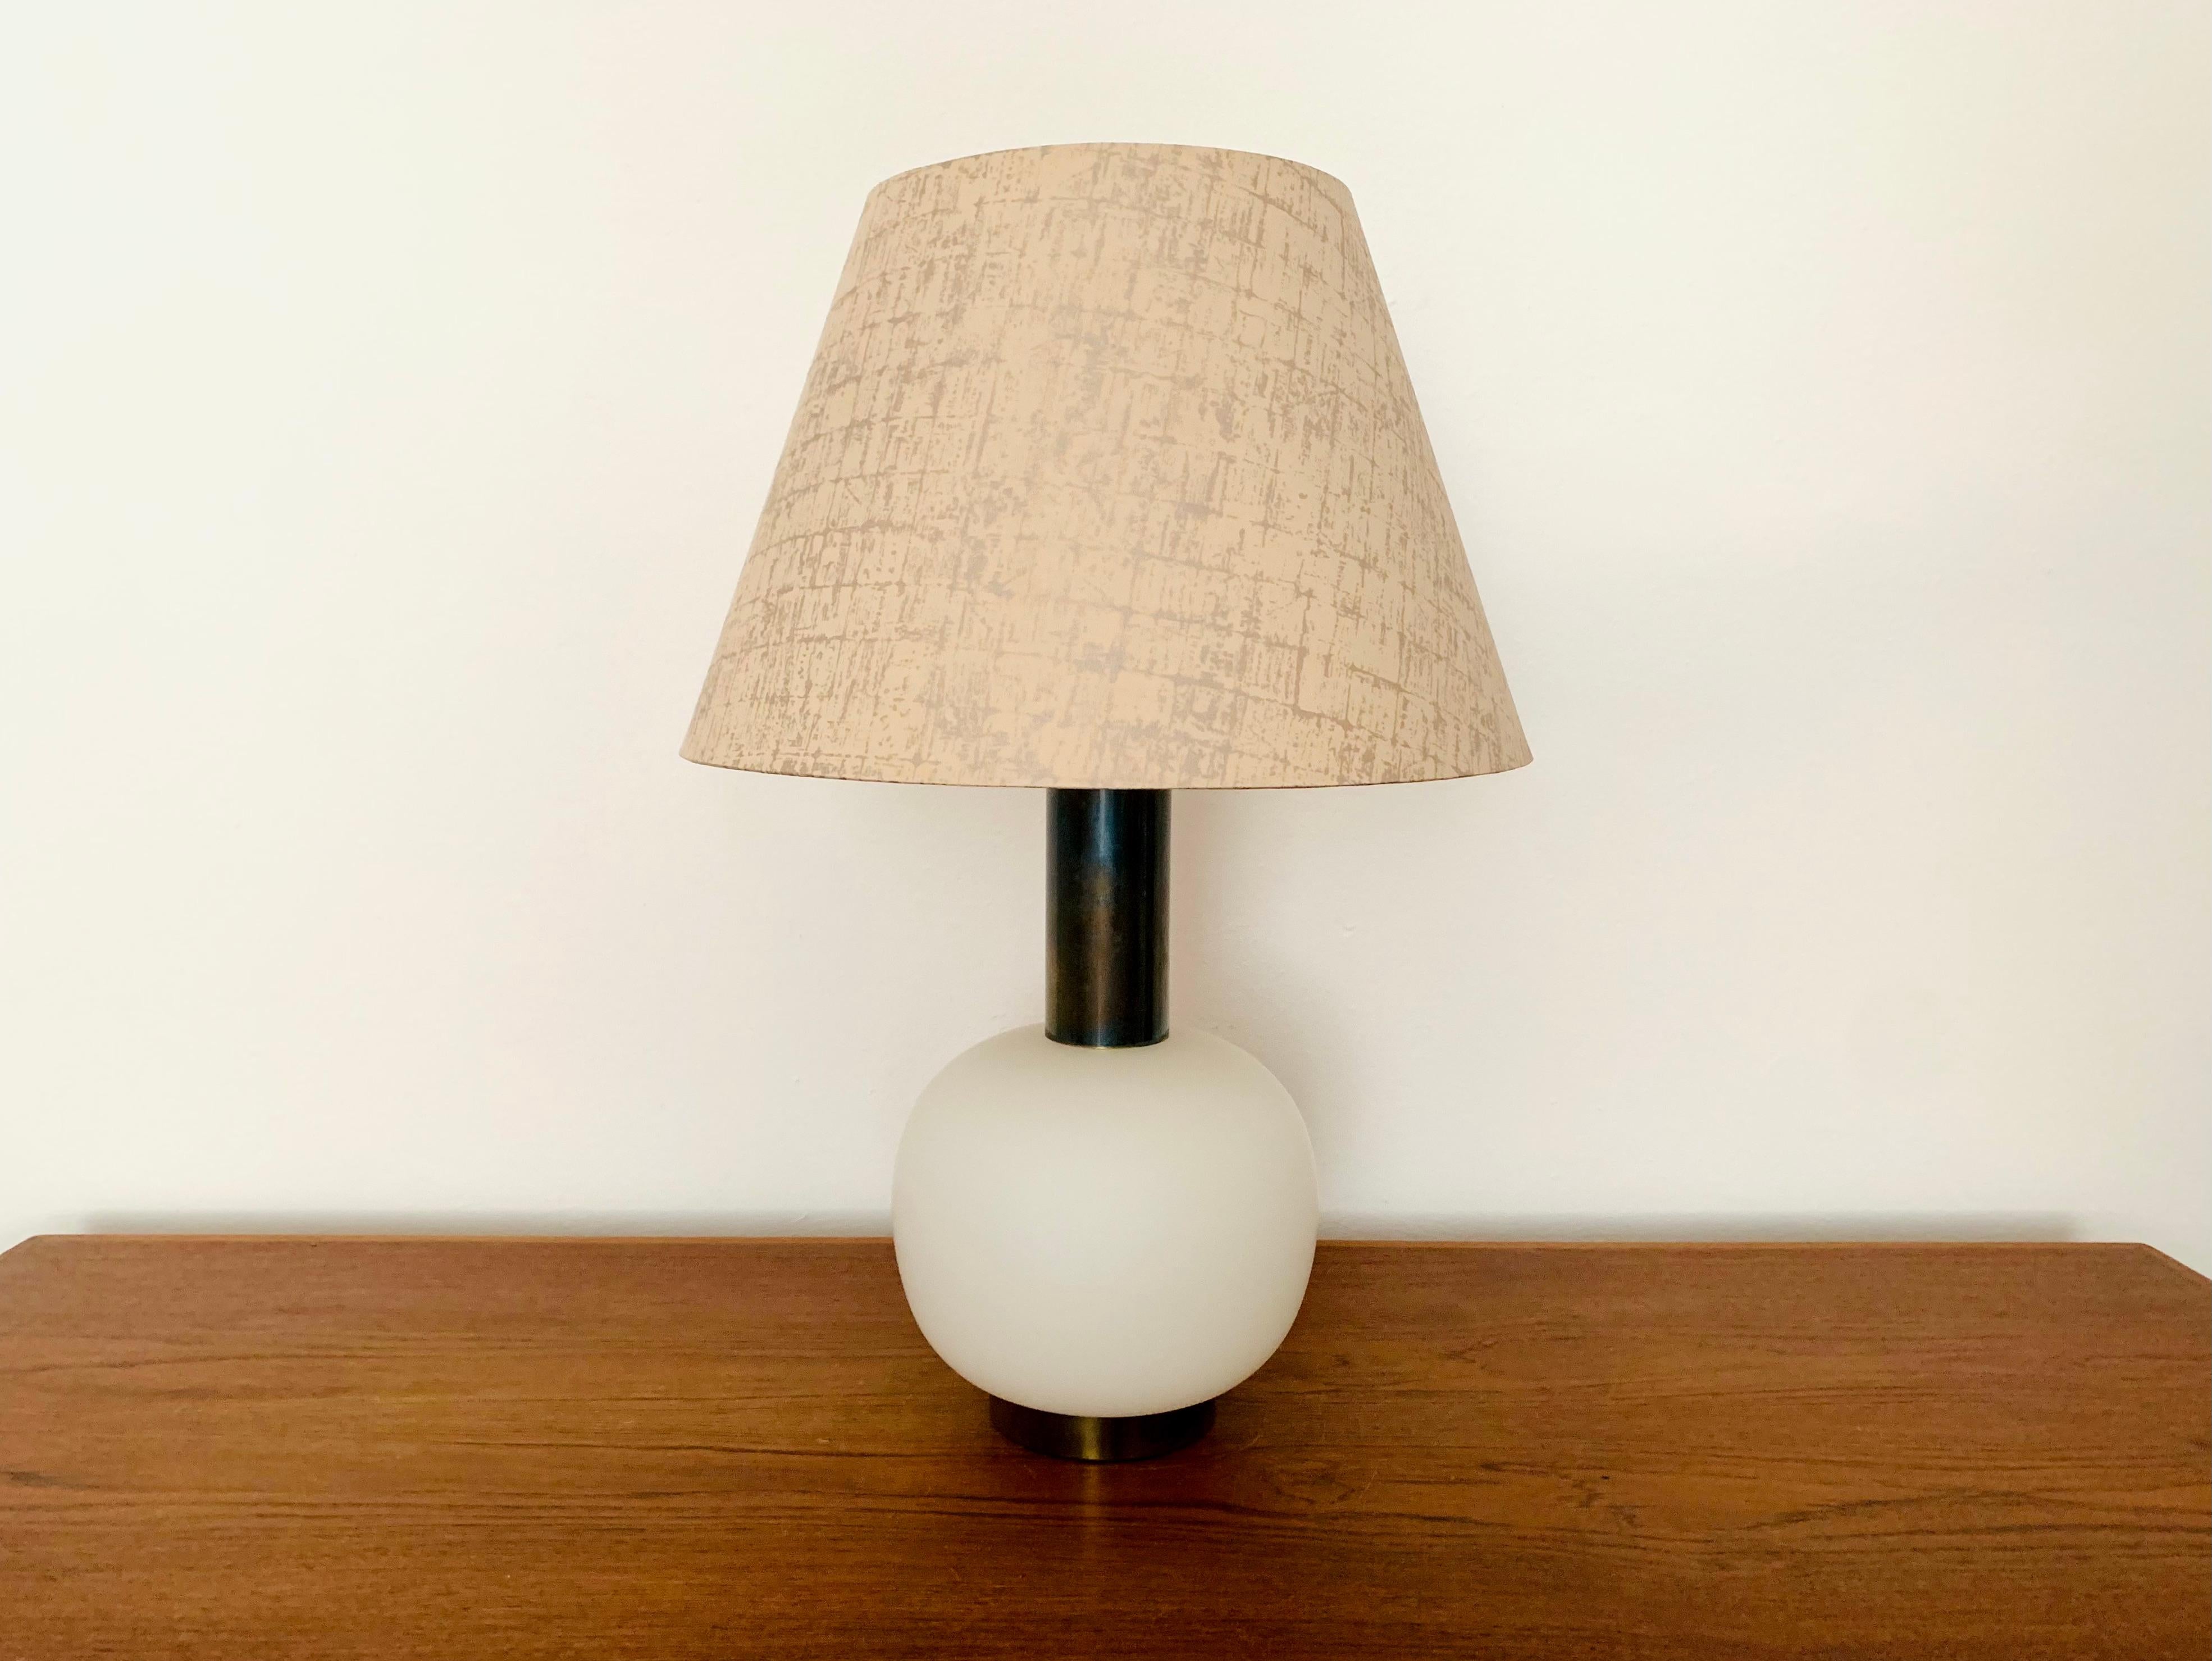 Sehr schöne und hochwertige Murano Glas Tischlampe aus den 1960er Jahren.
Die Lampe ist sehr edel und ein ganz besonderes Designobjekt.
Der beleuchtete Glassockel erzeugt ein sehr angenehmes Licht.

Bedingung:

Sehr guter Vintage-Zustand mit